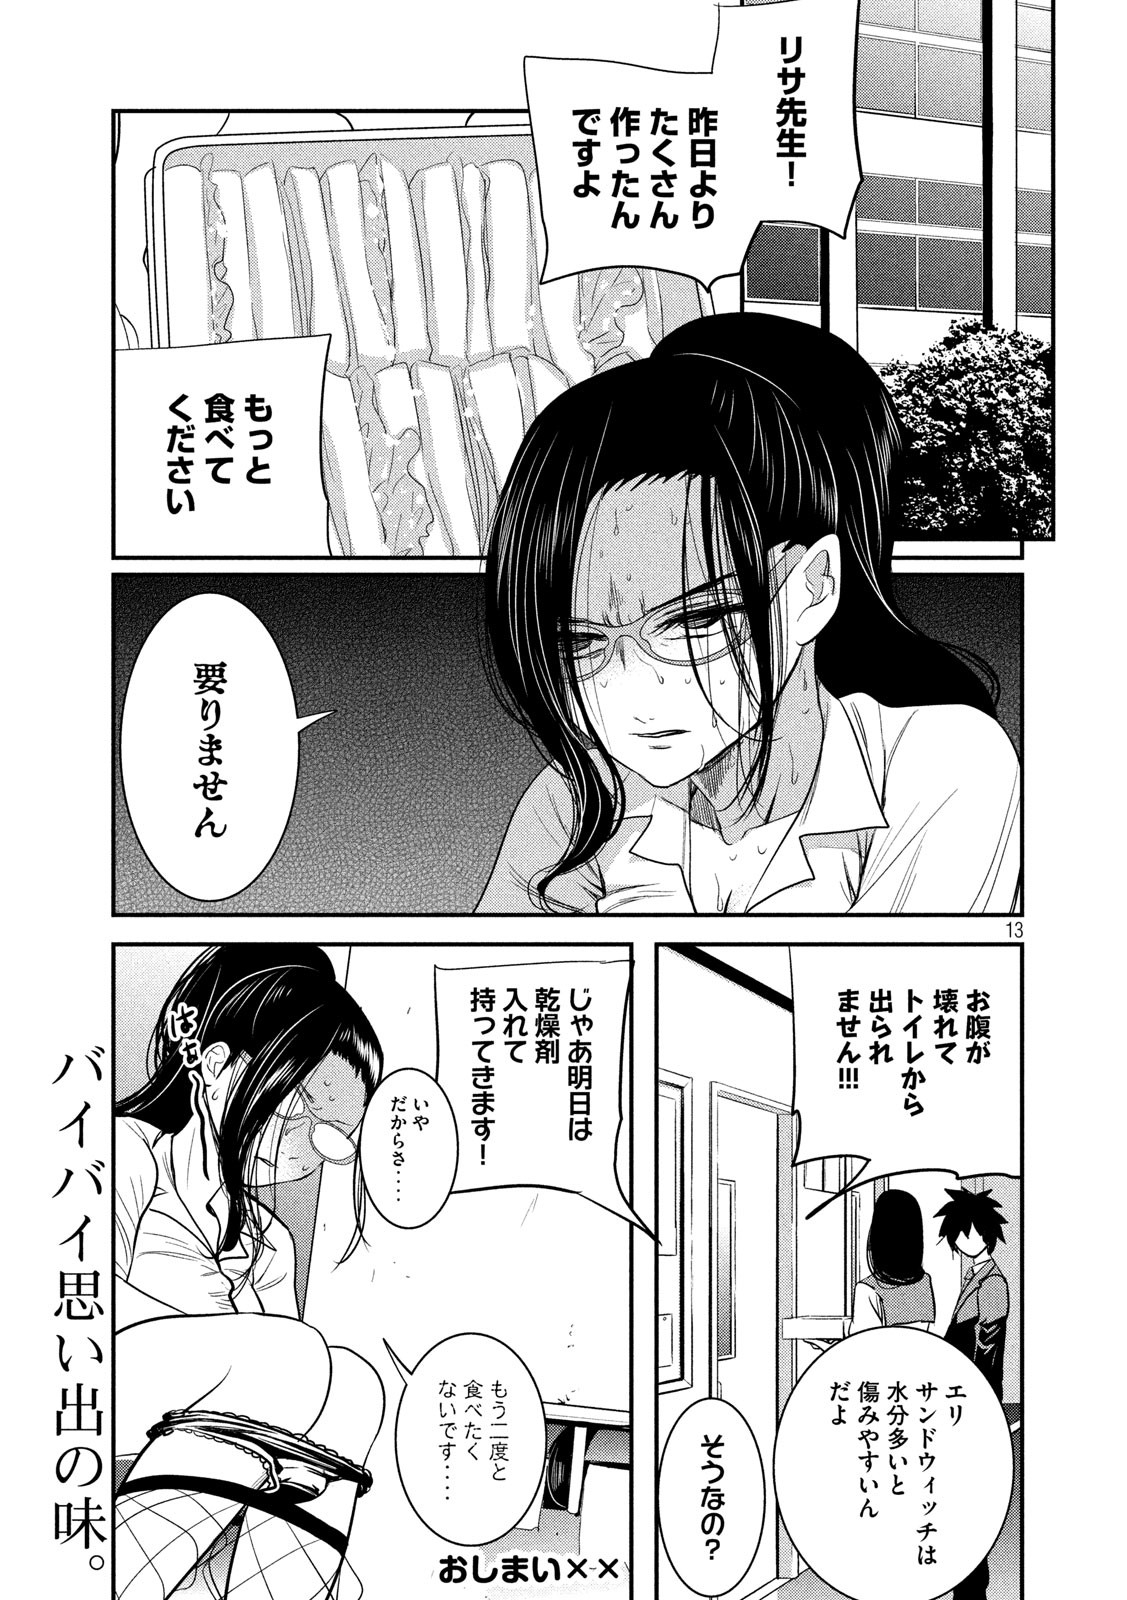 Eigo ×× Sensei - Chapter 4 - Page 13